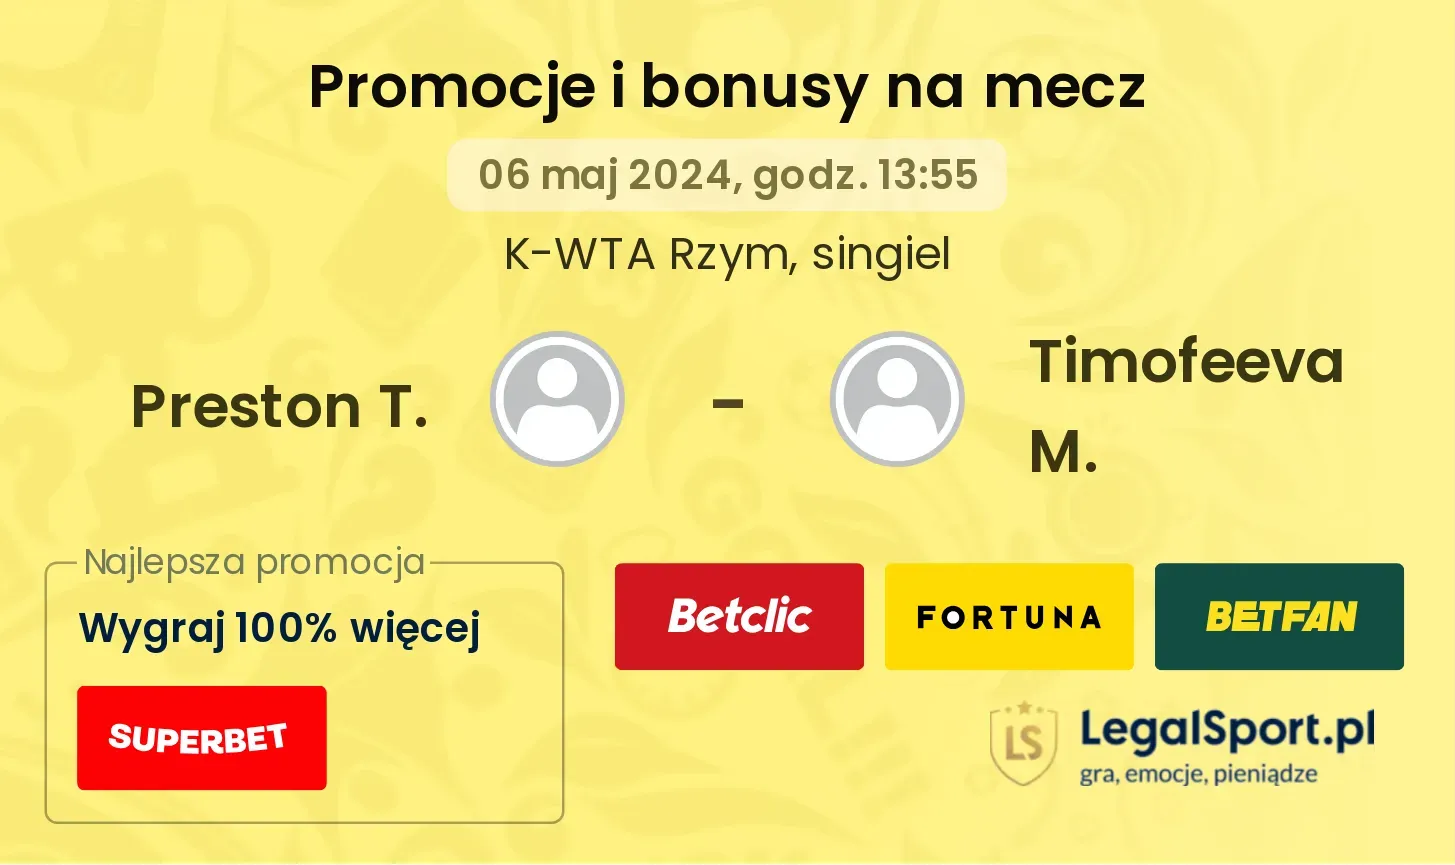 Preston T. - Timofeeva M. promocje bonusy na mecz